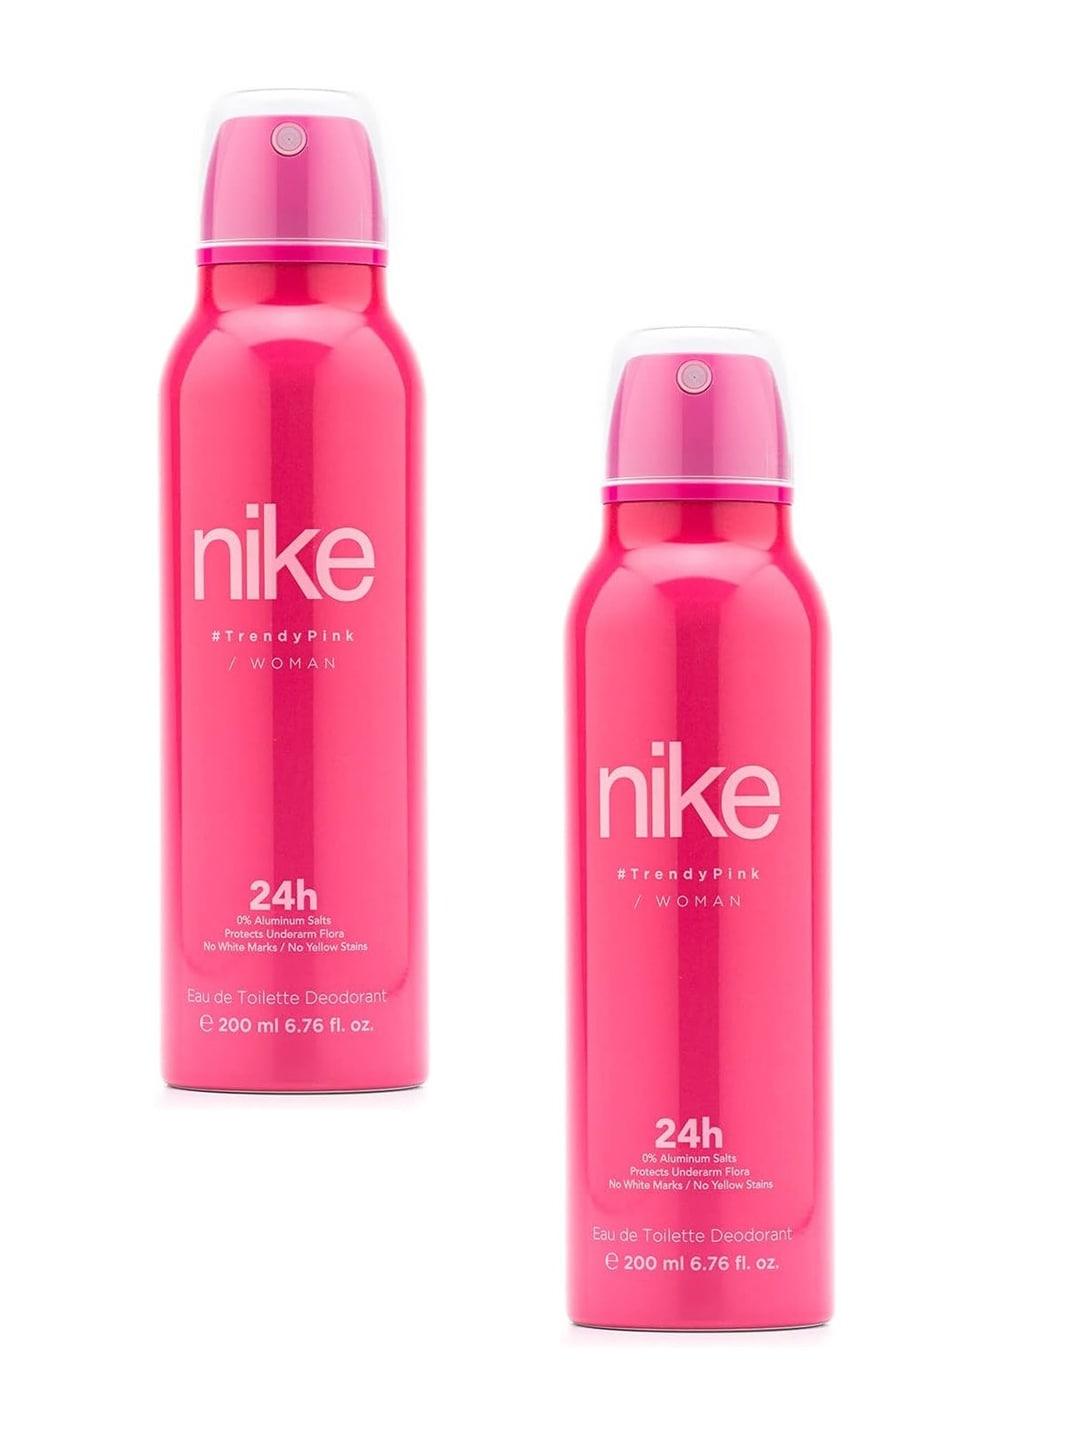 nike women set of 2 trendy pink long lasting eau de toilette deodorant - 200 ml each